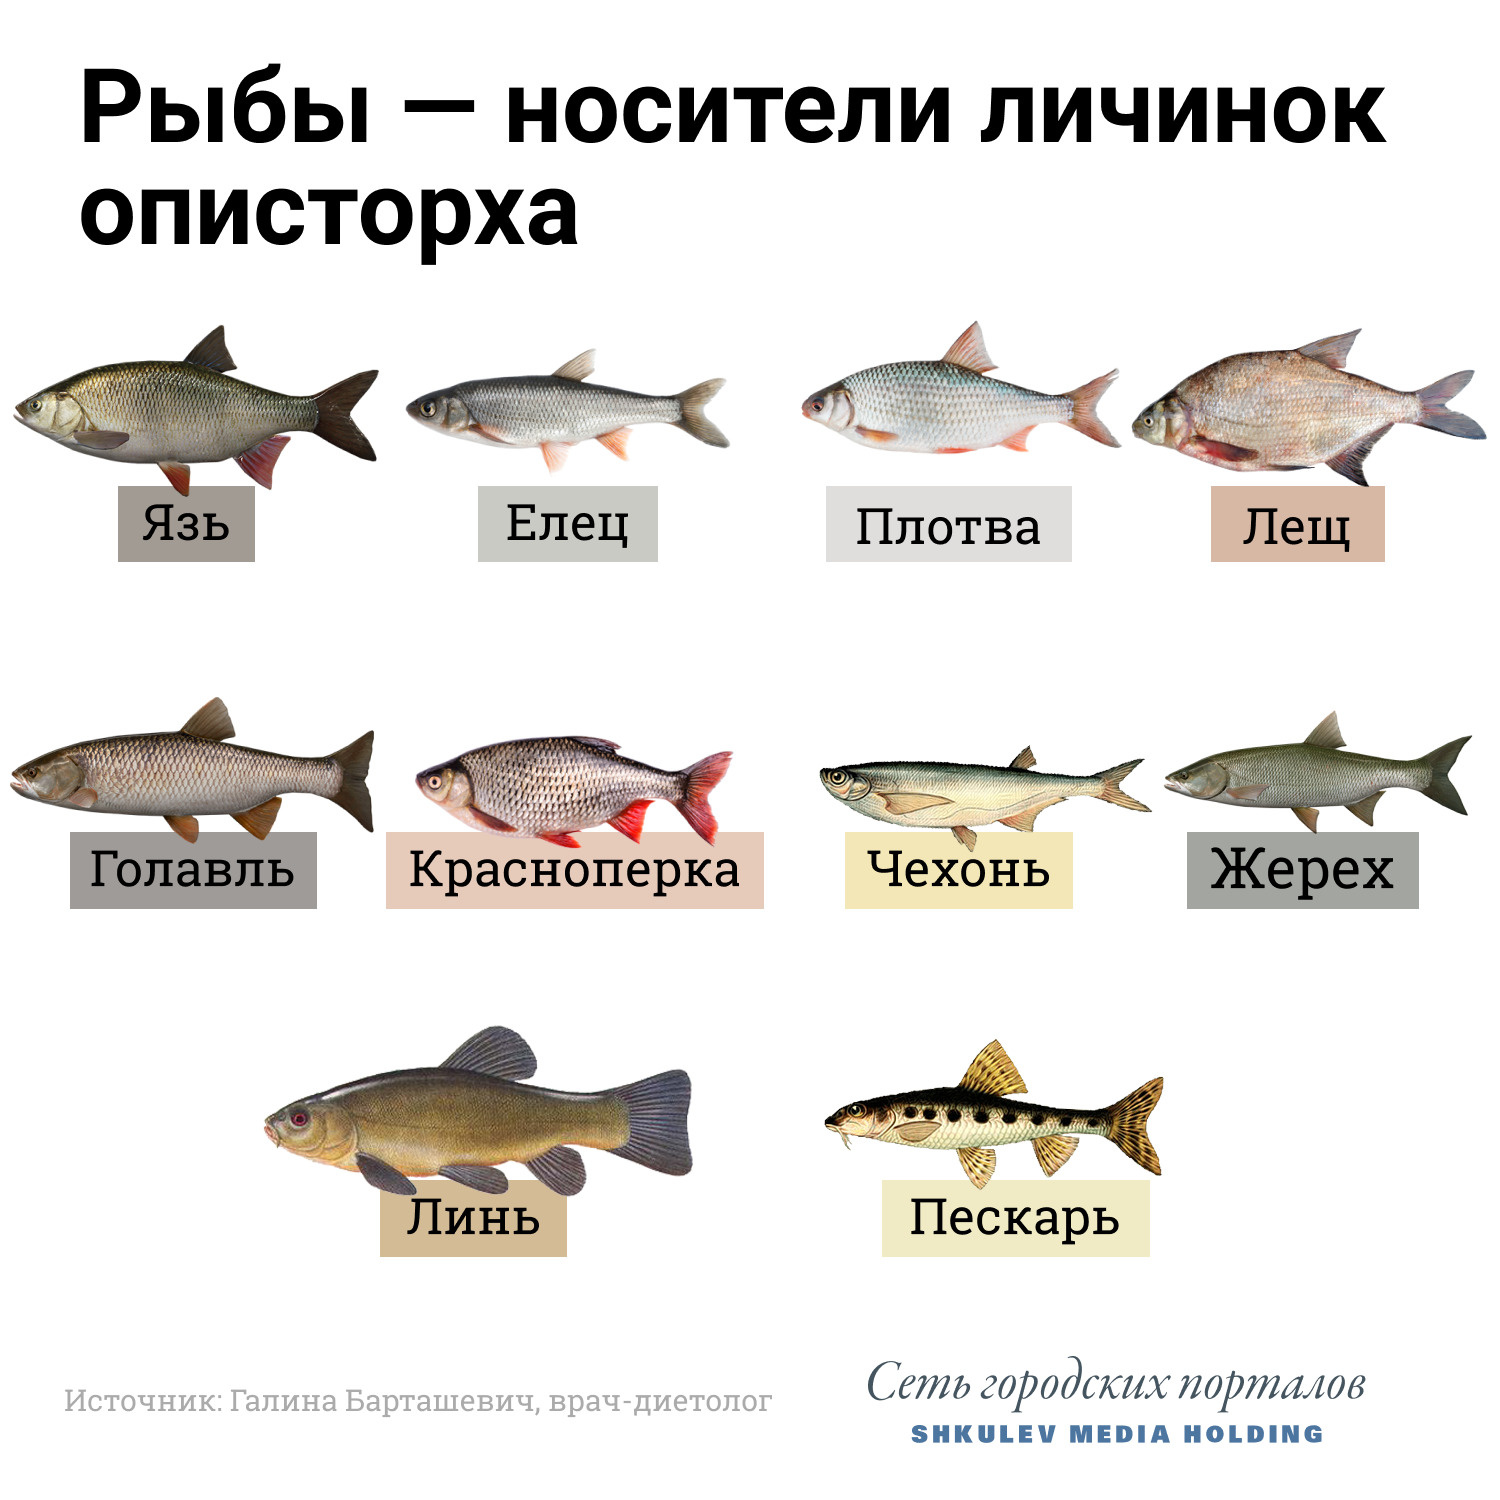 Список вредных видов рыбы, которую лучше не есть - 11 апреля 2021 -  ФОНТАНКА.ру